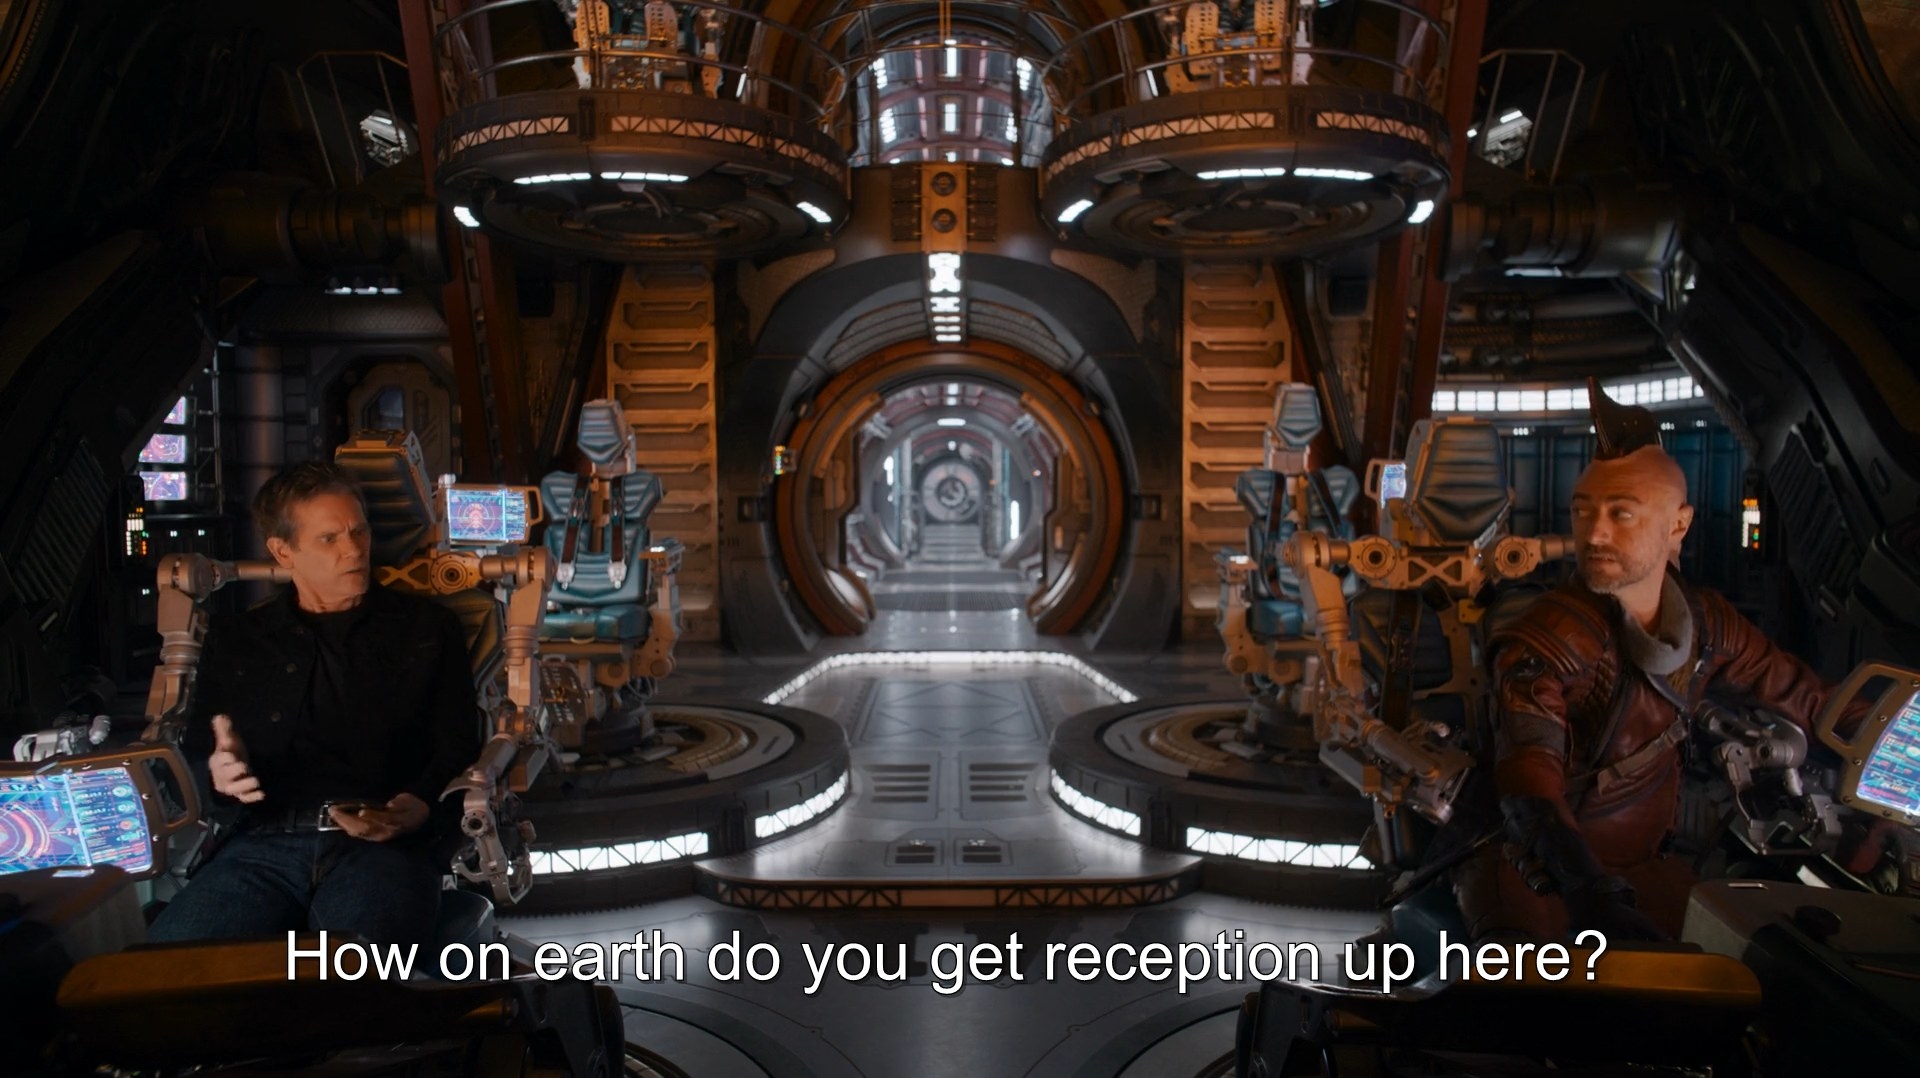 Kevin Bacon and Sean Gunn talk inside a spaceship